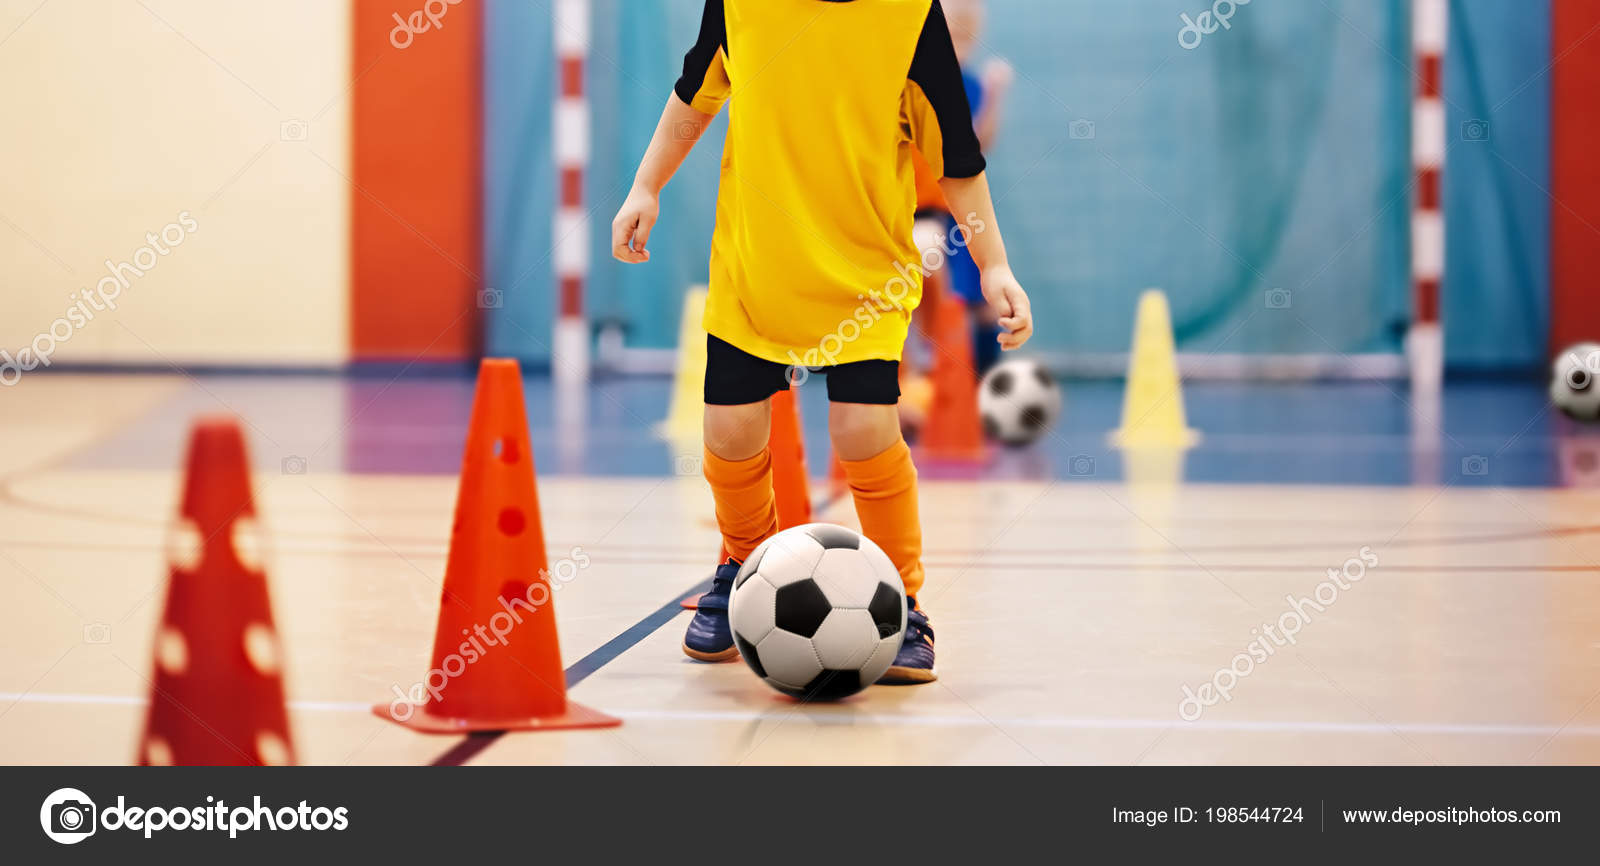 Gol Gol Futebol Com Quatro Cones Jogar Bola